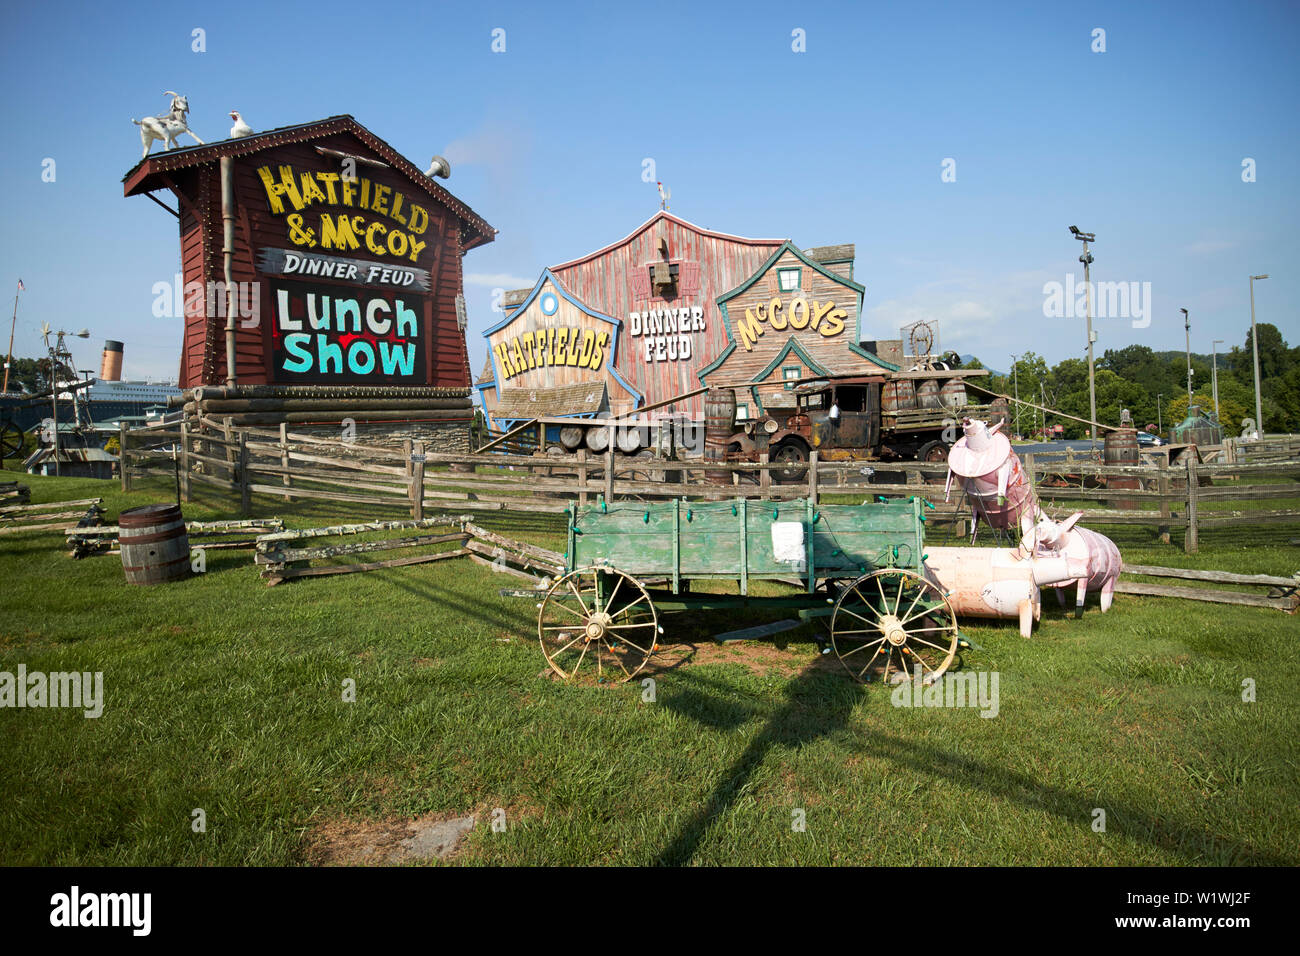 El Hatfield & mccoy cena feudo comedia musical sede en Pigeon Forge, Tennessee, EE.UU. Foto de stock